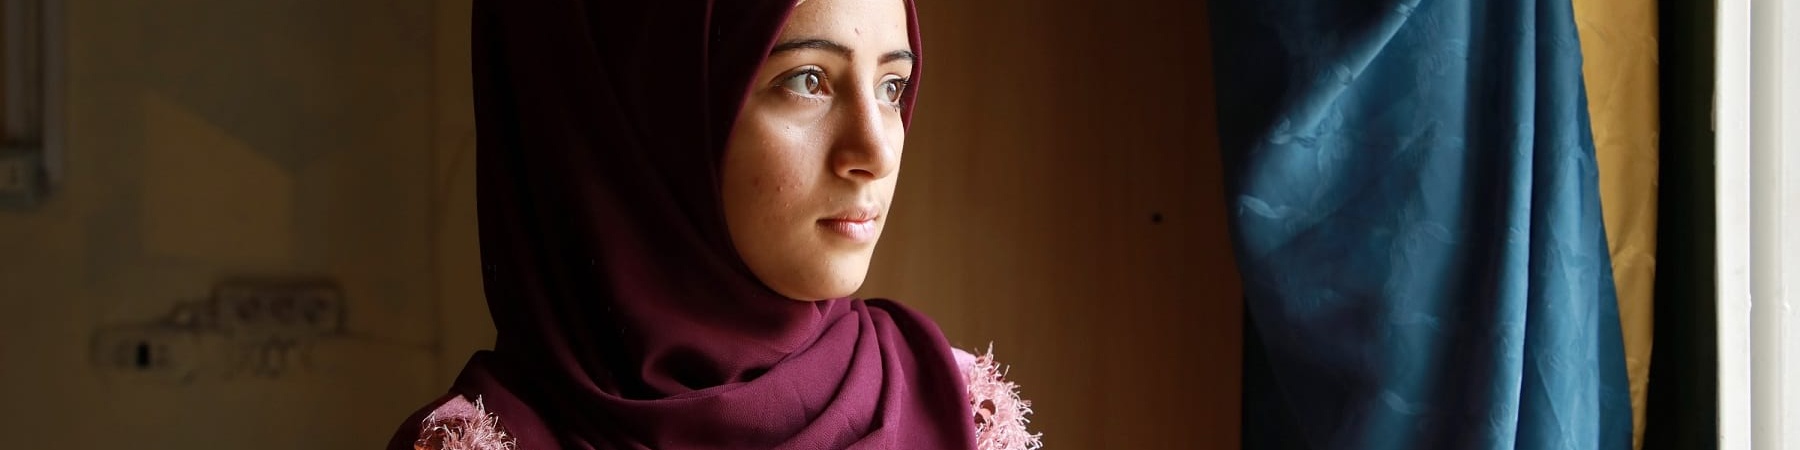 ritratto a mezzo busto di profilo di una ragazza rifugiata siriana in Libano